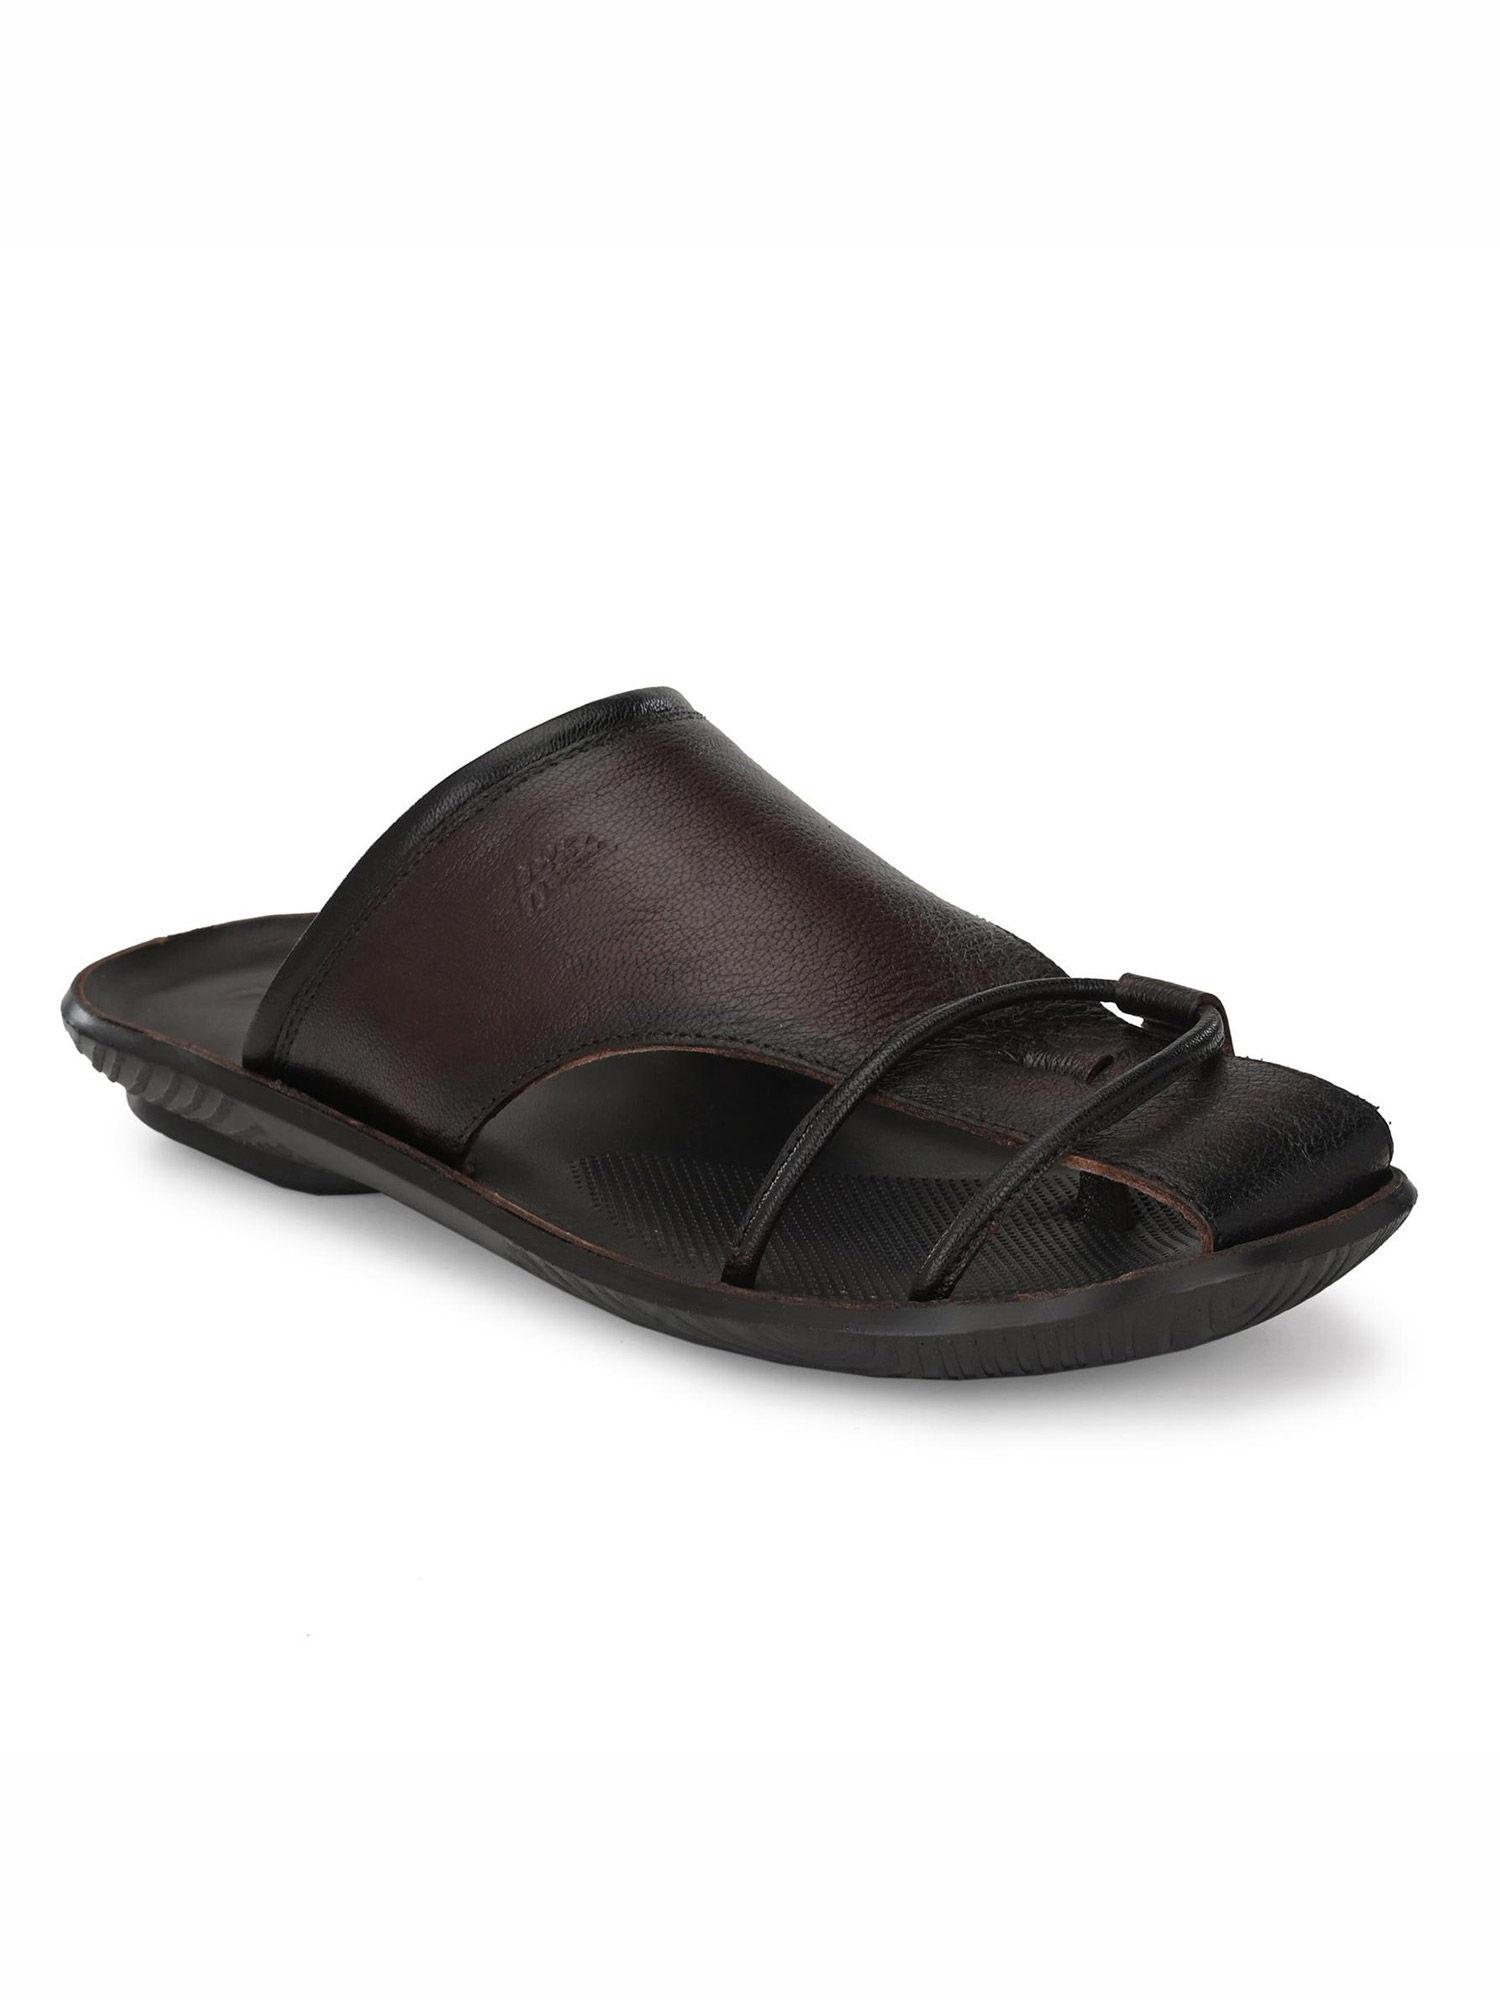 men's brown leather indoor outdoor comfort slippers